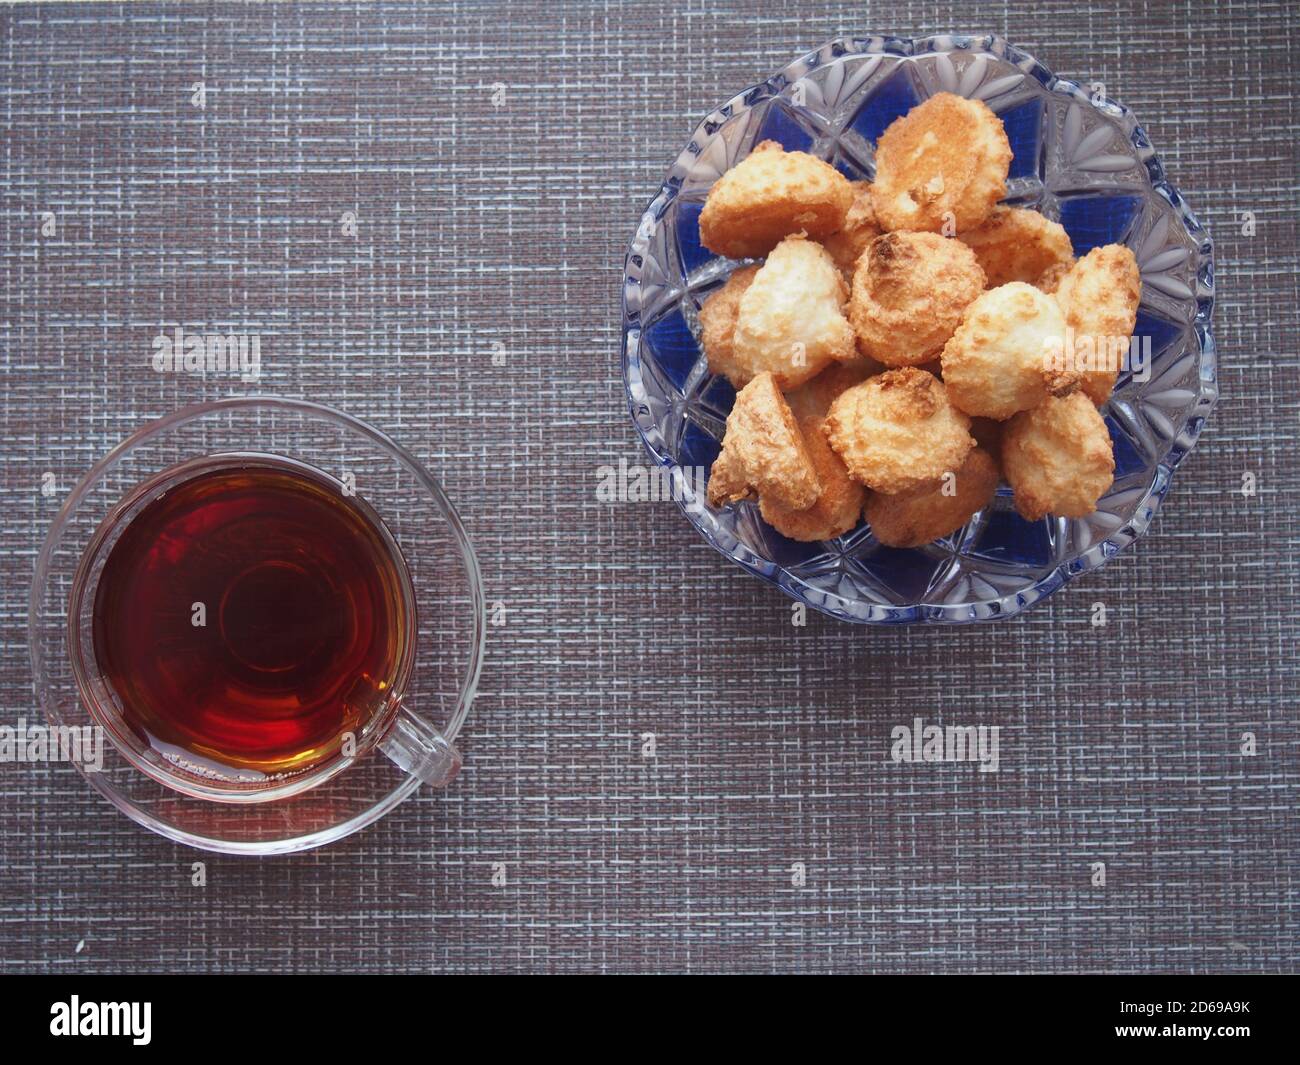 Sur la table, recouverte d'un tissu brun, se trouve une tasse de thé et un bol de biscuits. Encore-vie. Banque D'Images